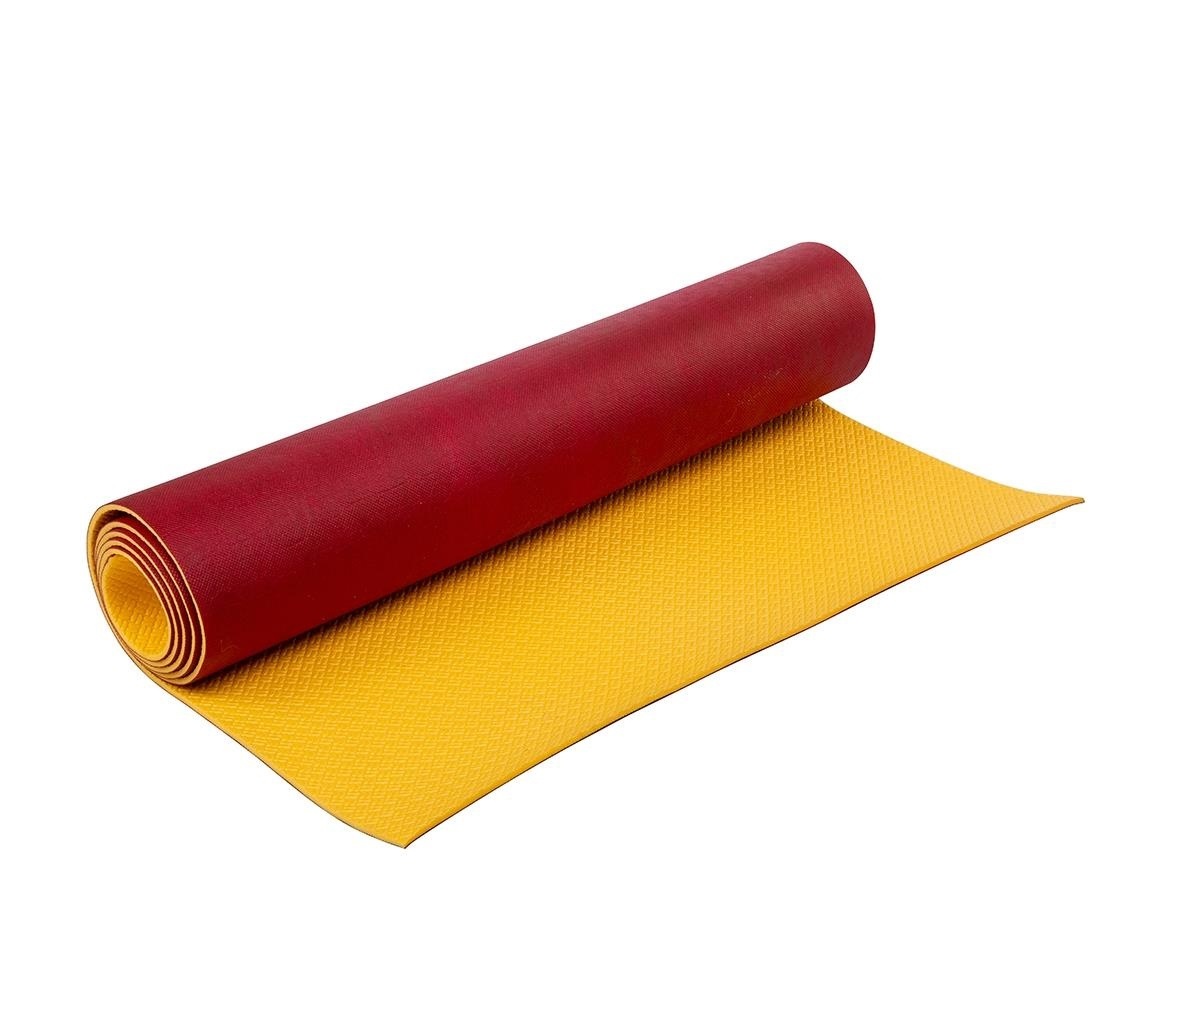 Коврик Decor Лето дубл. тканью 1800х600х4, желт. (идеален в жару)плотность 50кг/м3